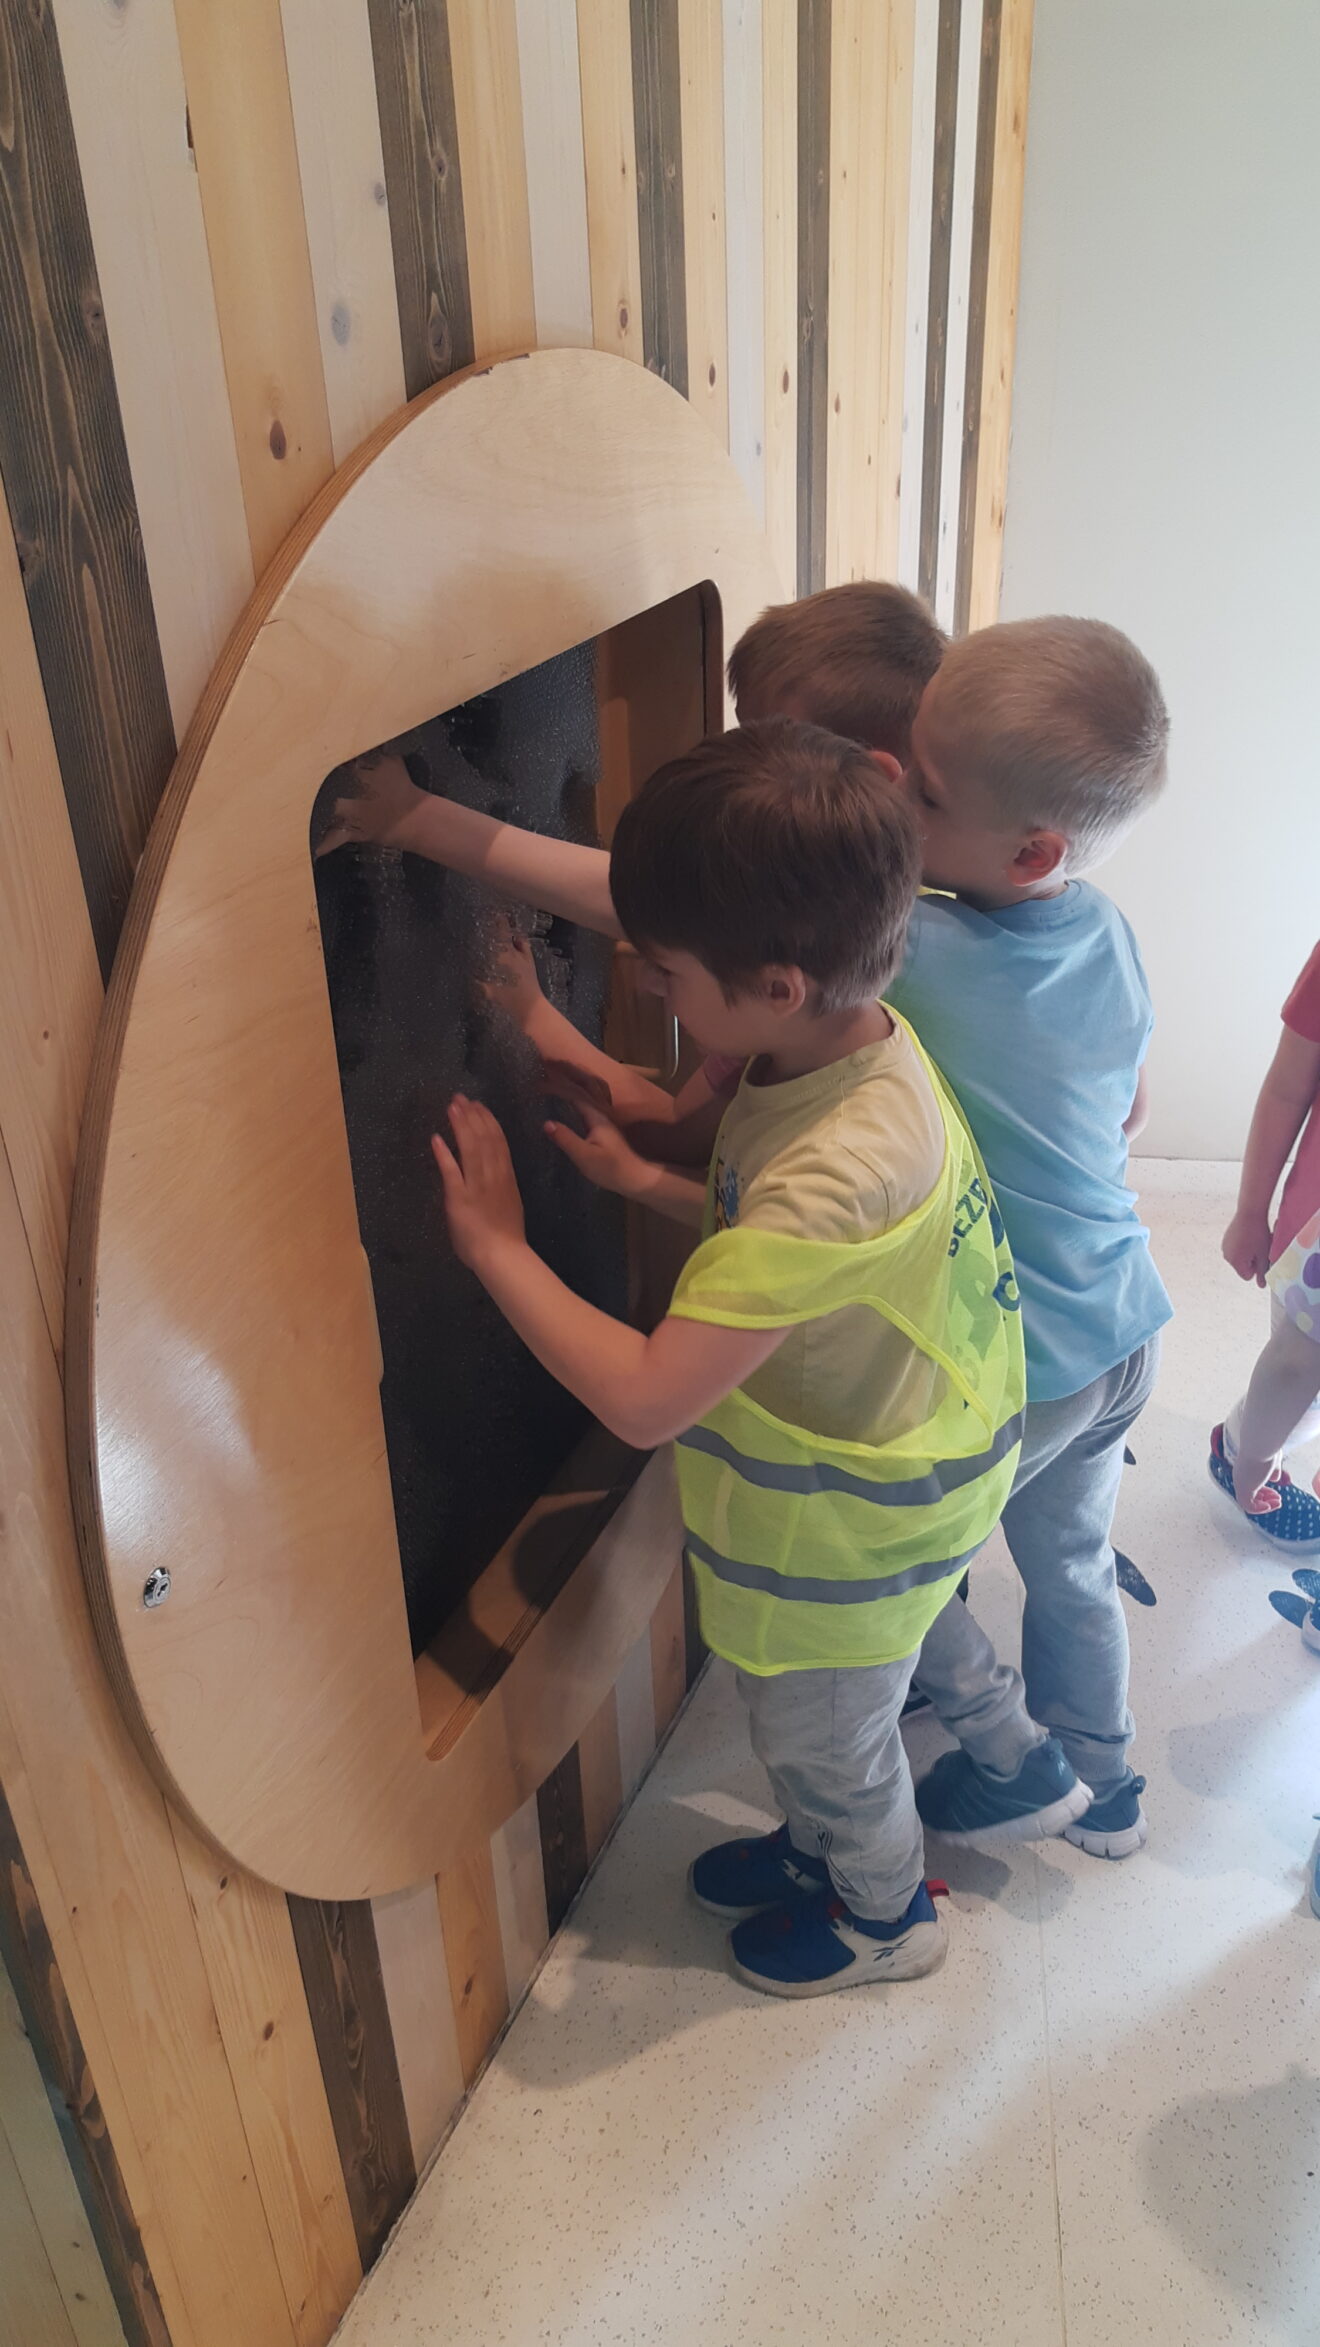 Dzieci bawią się w sali Bzz w Centrum Nauki Kopernik